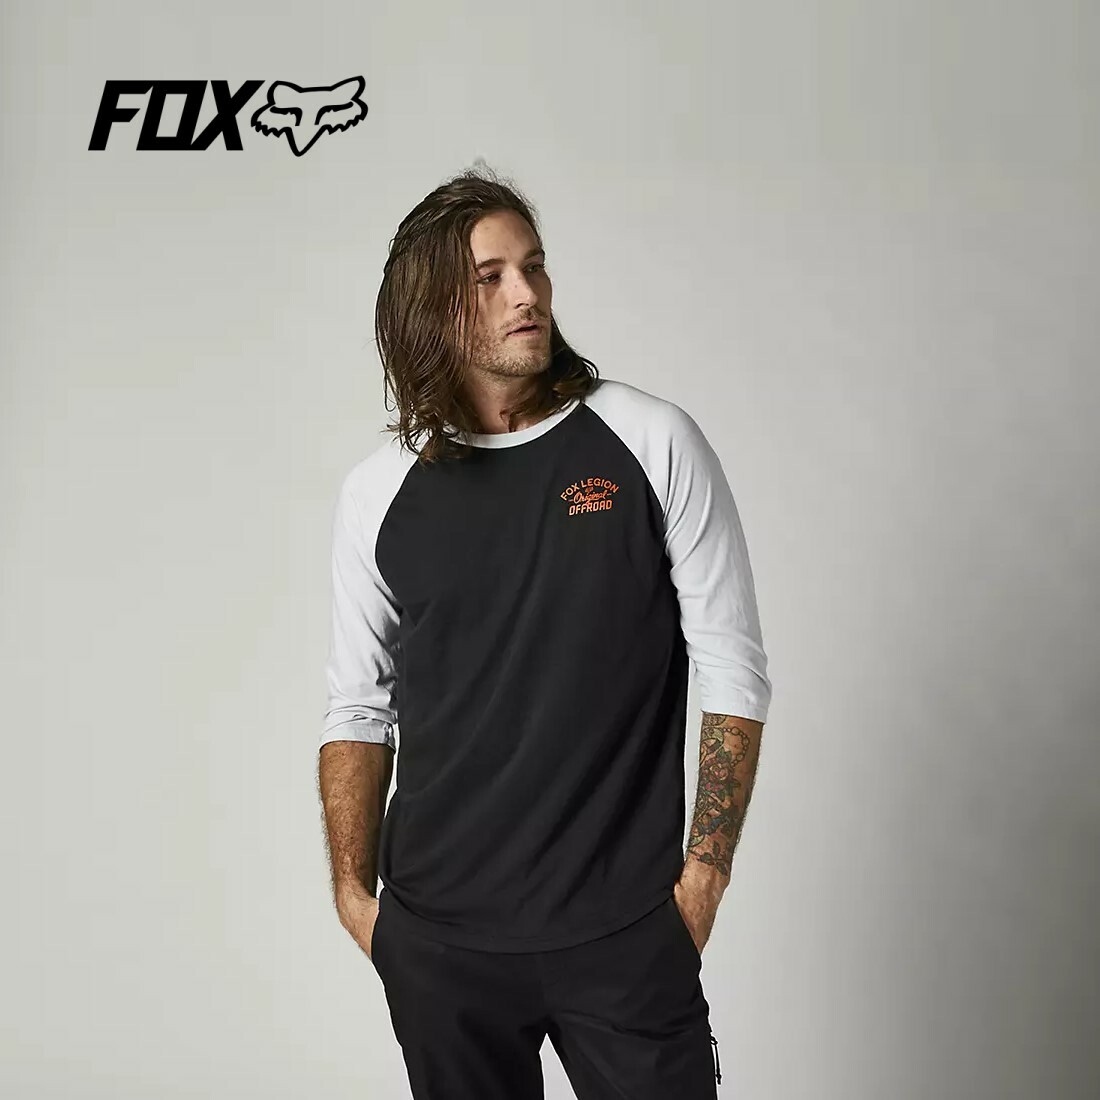 FOX RACING フォックスレーシング オリジナルスピード 3/4ラグランTシャツ ブラック ORIGINAL SPEED 3/4 RAGLAN SHIRT Black